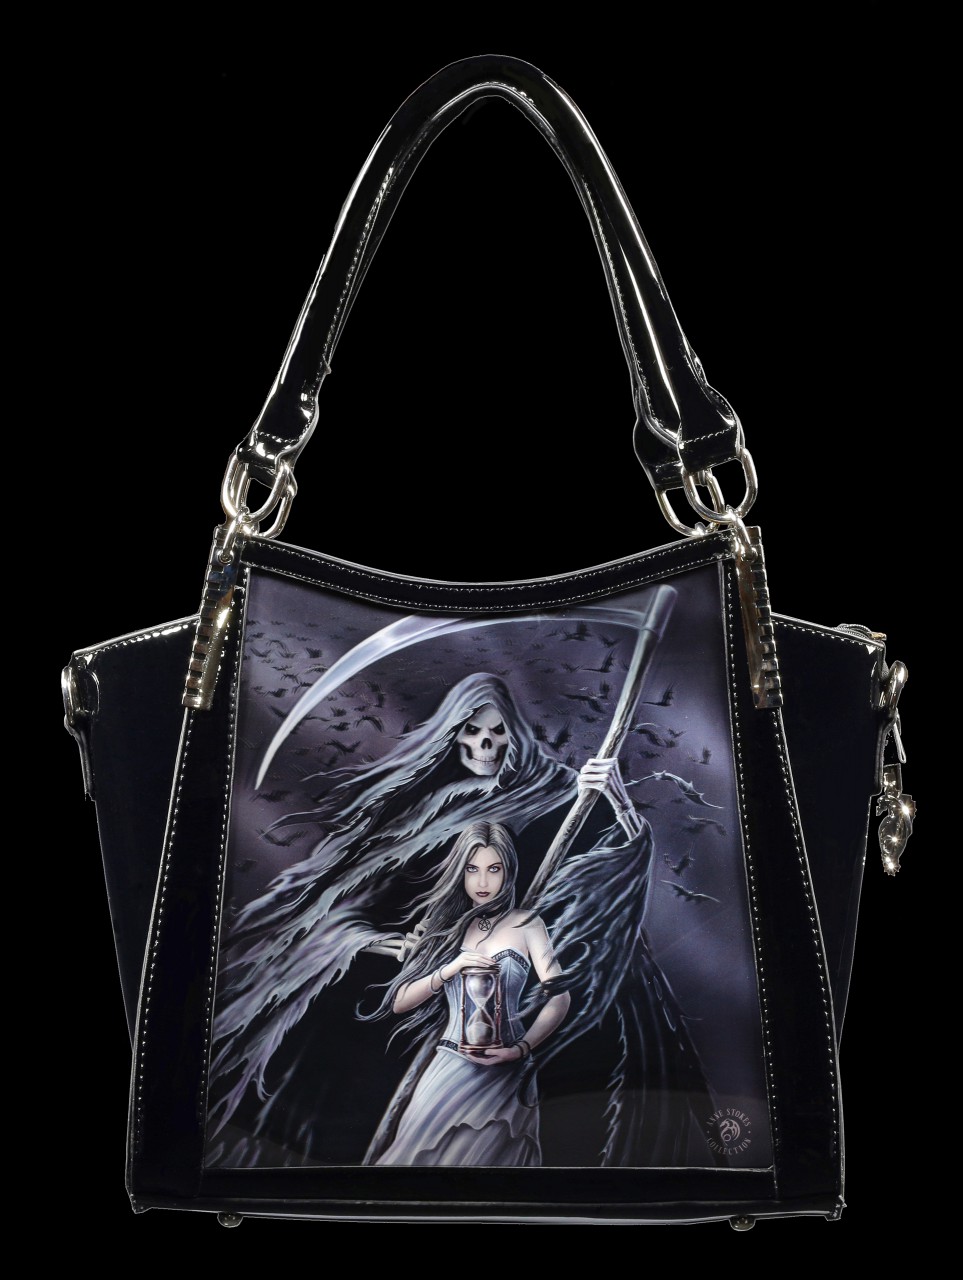 3D Fantasy Handbag - Summon the Reaper